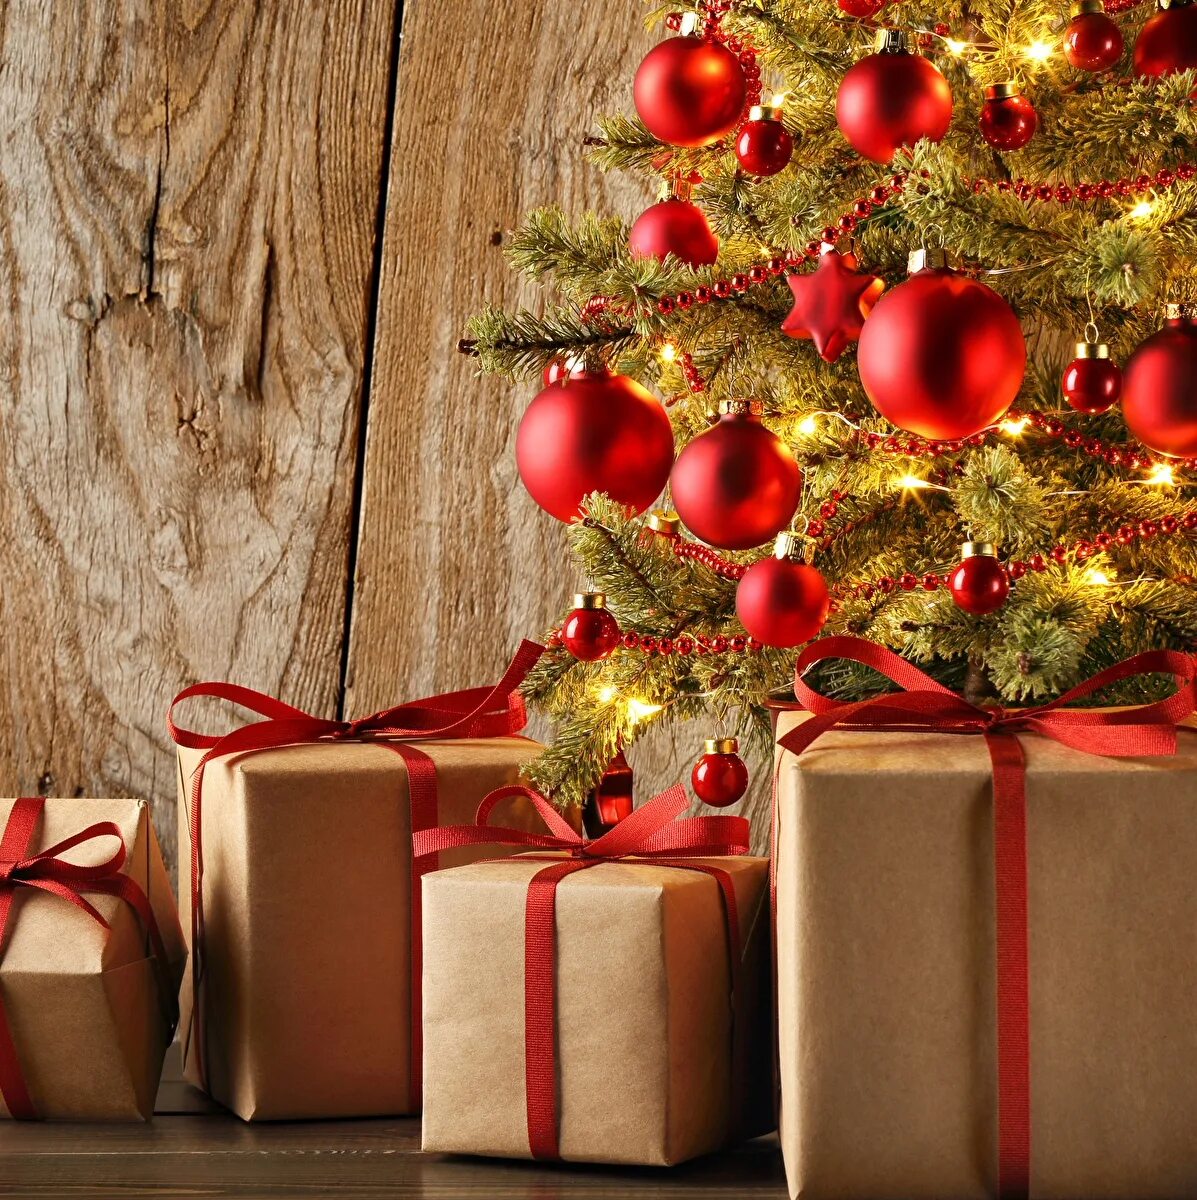 Holiday gifts. Подарки для елки. Новогодняя елка с подарками. Подарок на новый год с елкой. Новогодние подарки под елкой.